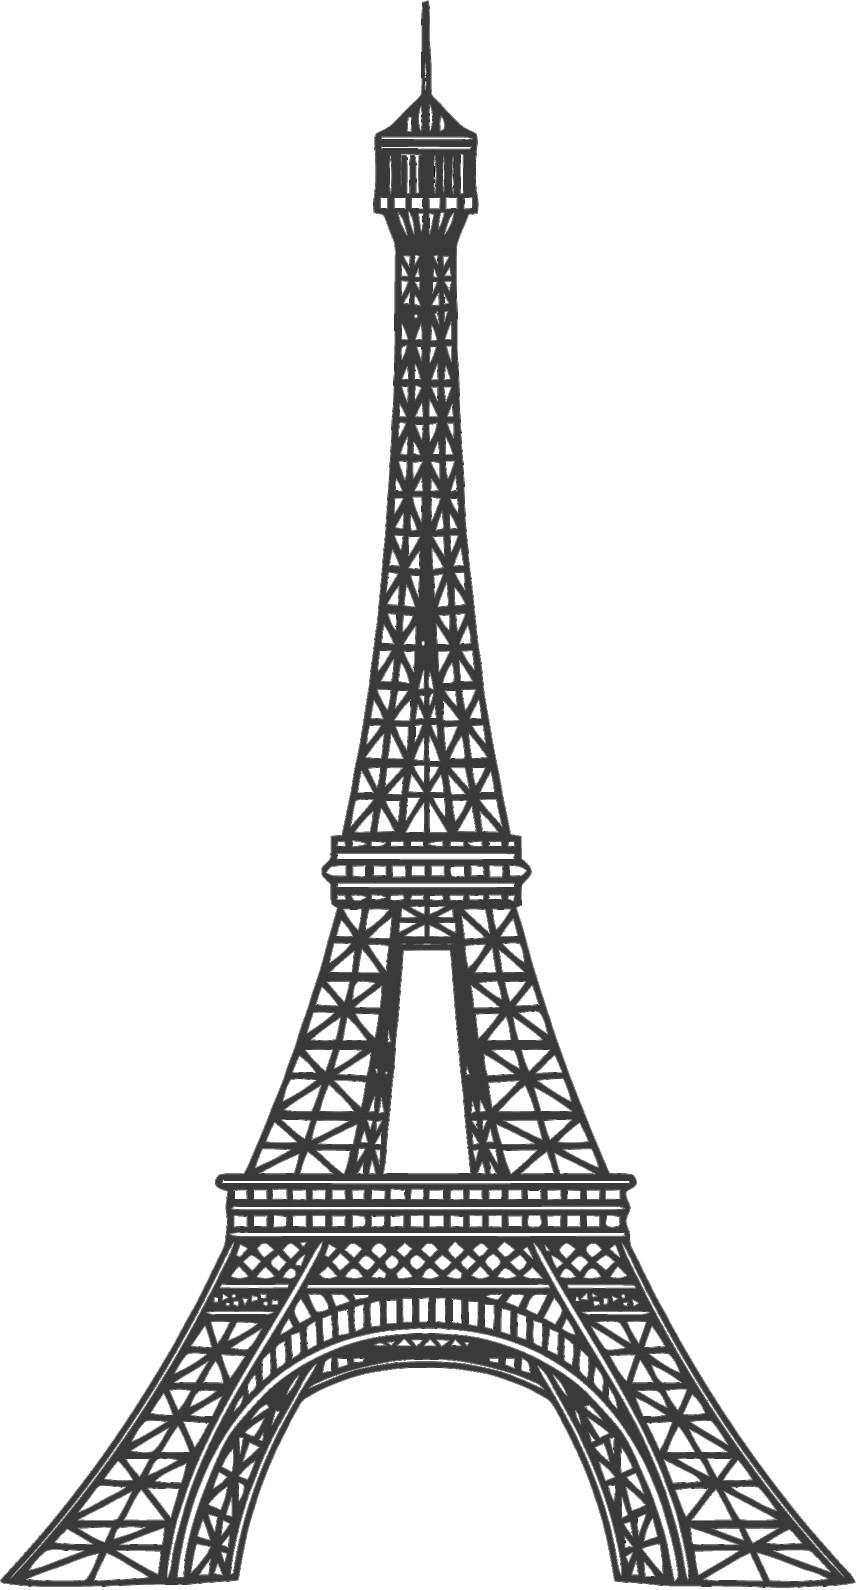 Dessin Tour Eiffel Simple  Paris Eiffel Tower Drawing  Free Download intérieur Comment Dessiner La Tour Eiffel 